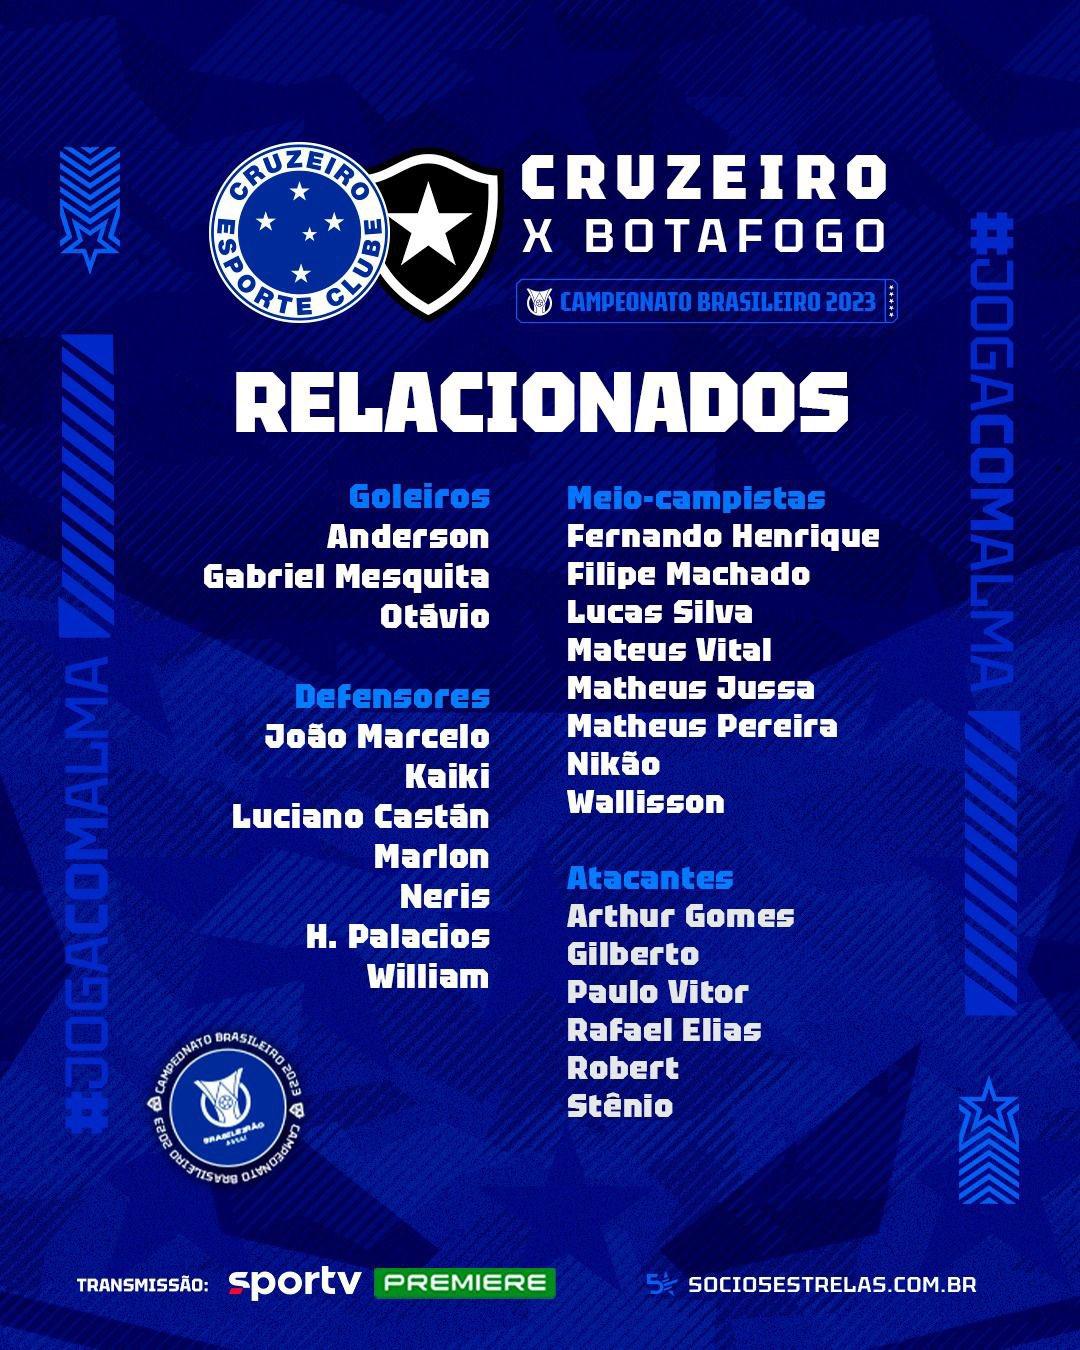 Recém-chegado, João Marcelo é relacionado para jogo contra o Botafogo (Divulgação / Cruzeiro)